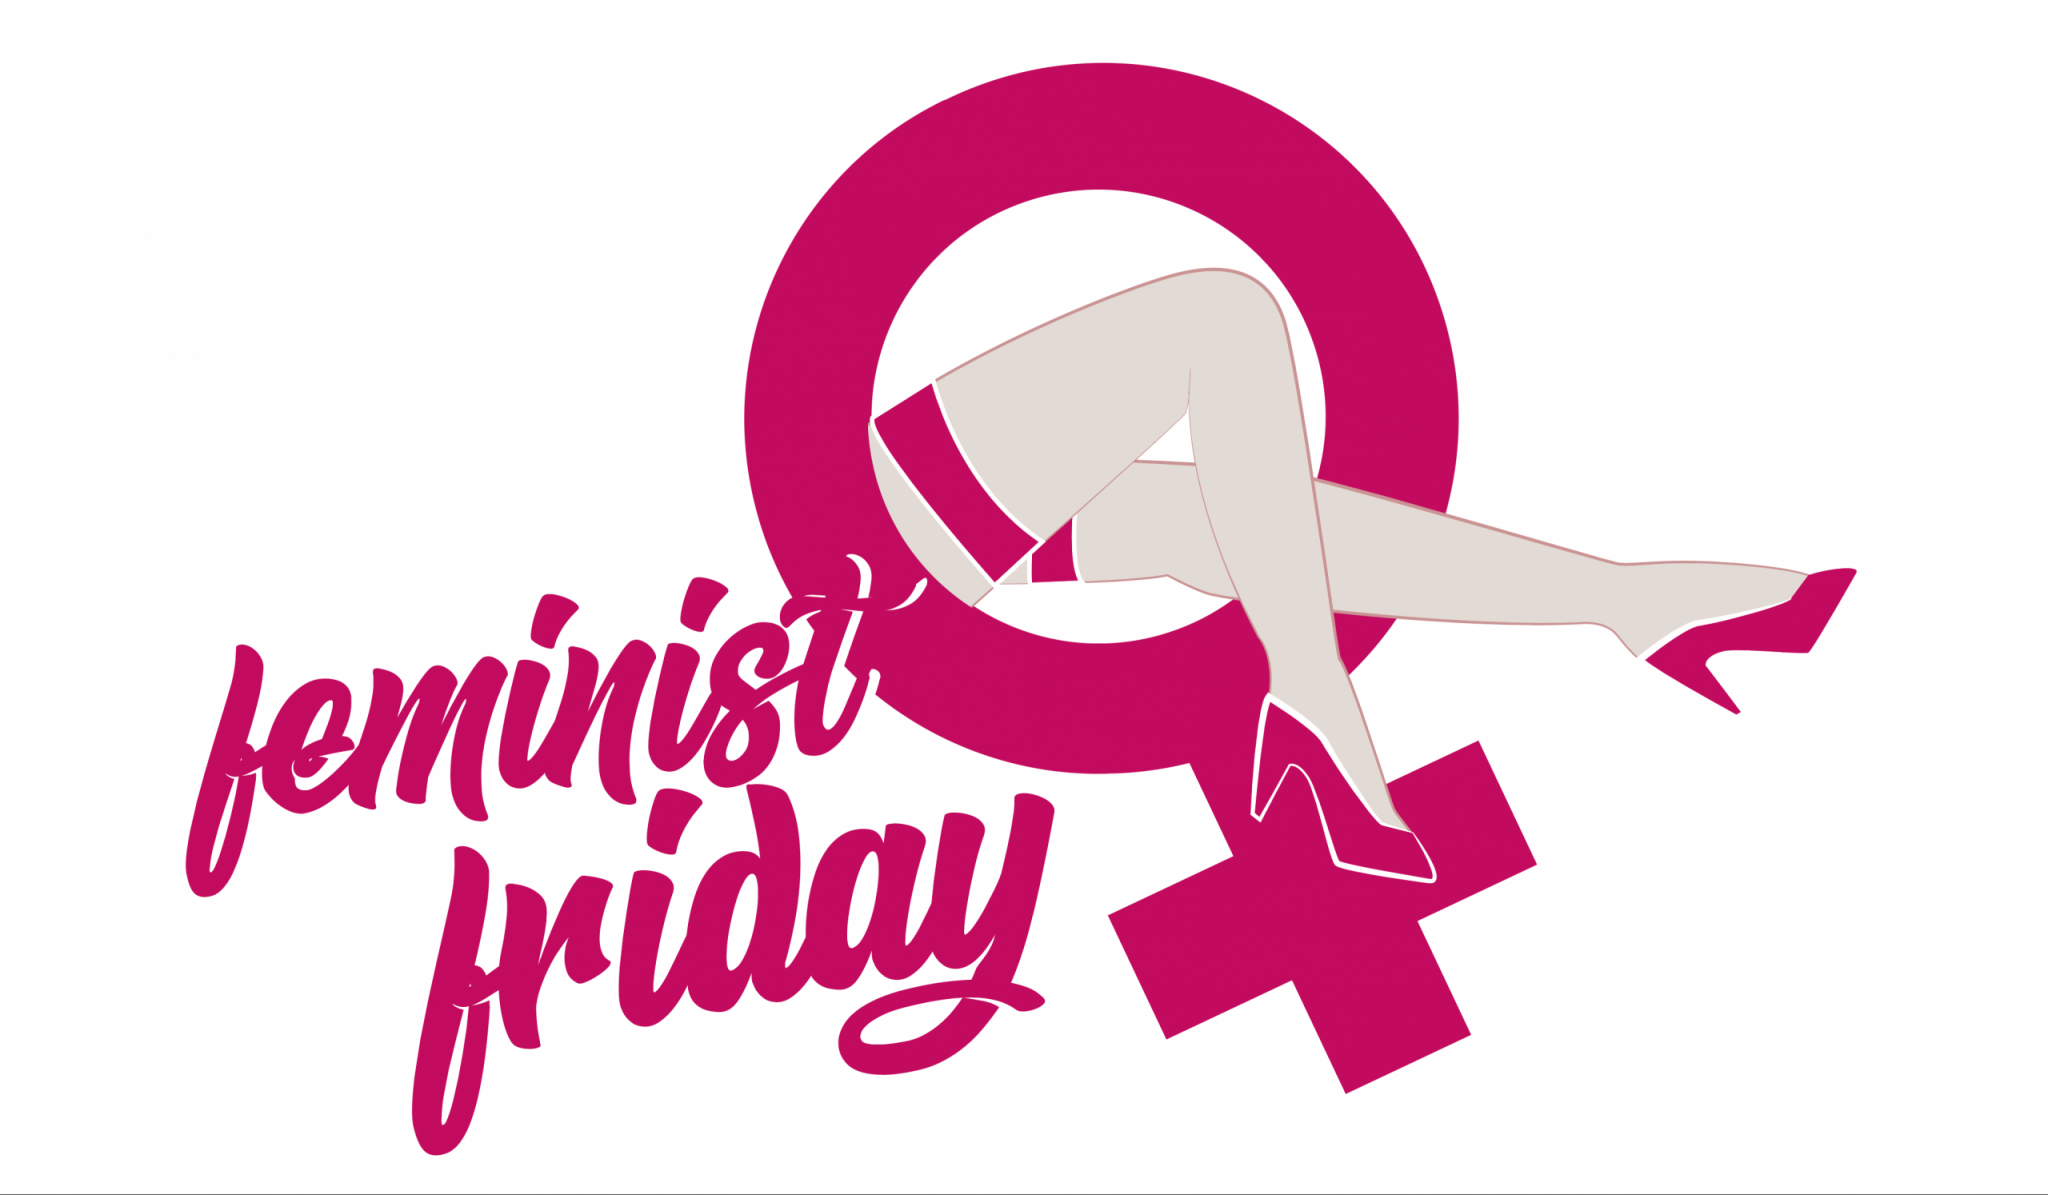 Feminist Friday Periode 12: Feminismus für 8,99€?